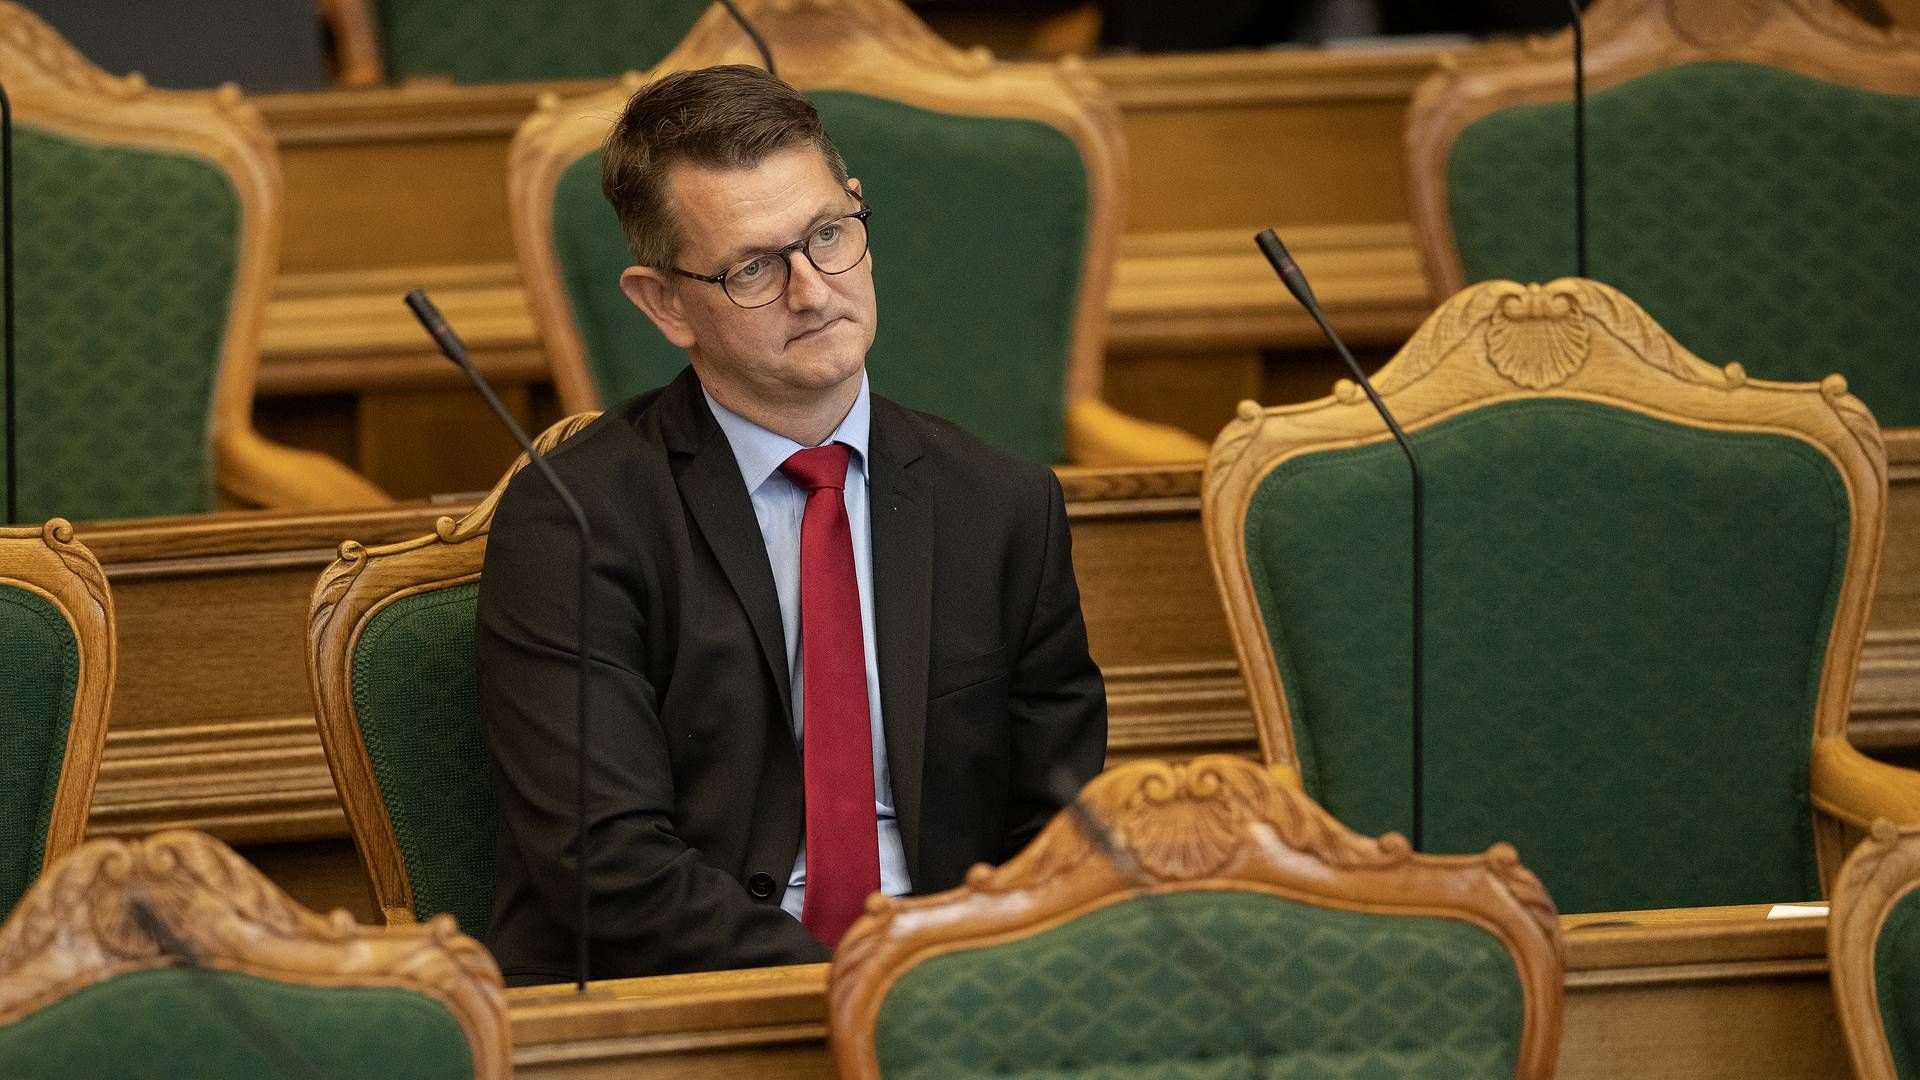 Venstres erhvervsordfører, Torsten Schack Pedersen, ønsker ikke at ændre ordningen for omdelte reklamer. | Foto: Peter Hove Olesen